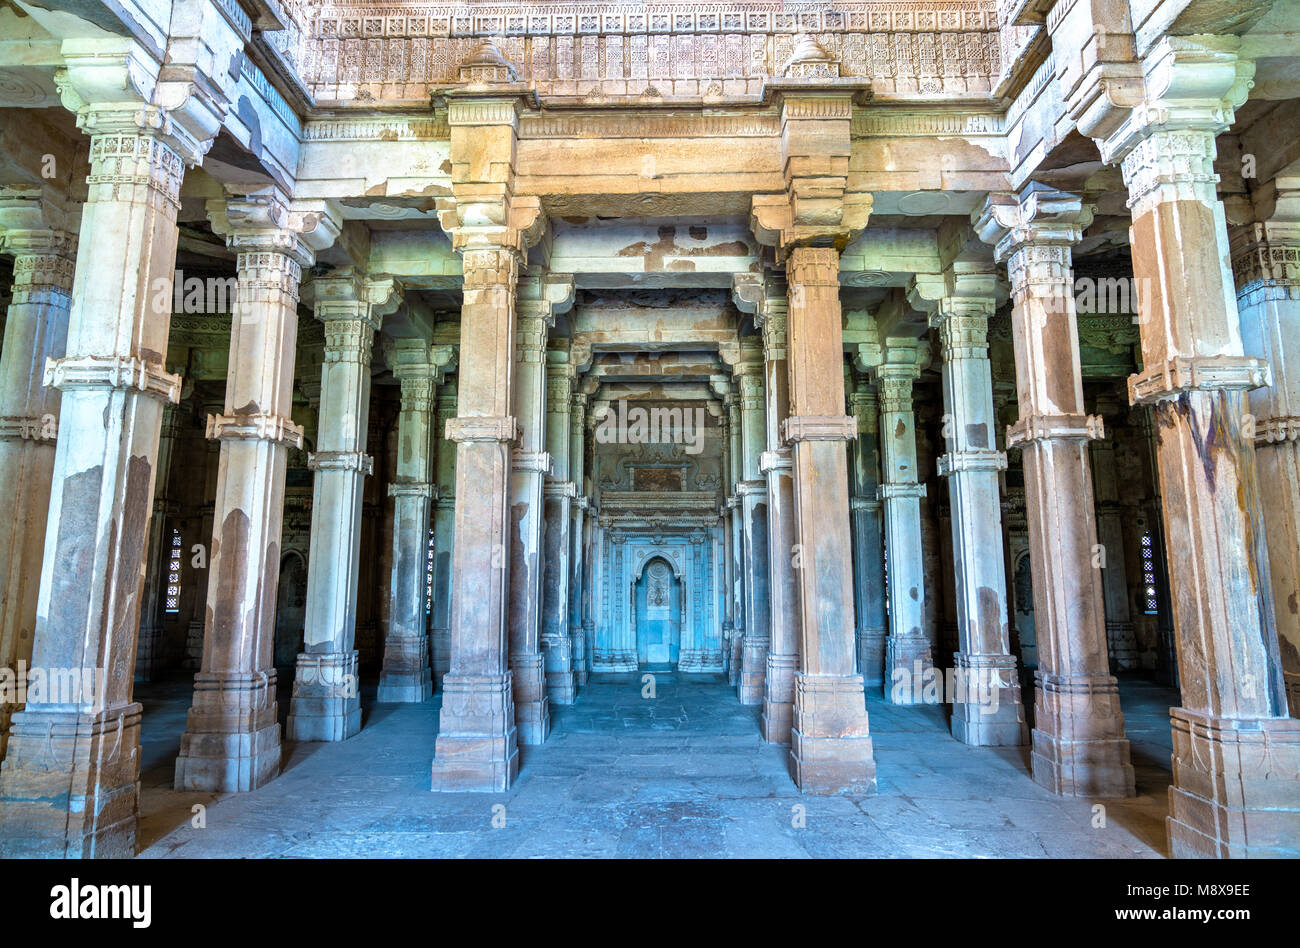 Intérieur de Jami Masjid, une attraction touristique au Parc archéologique de Champaner-Pavagadh - de l'état du Gujarat en Inde Banque D'Images